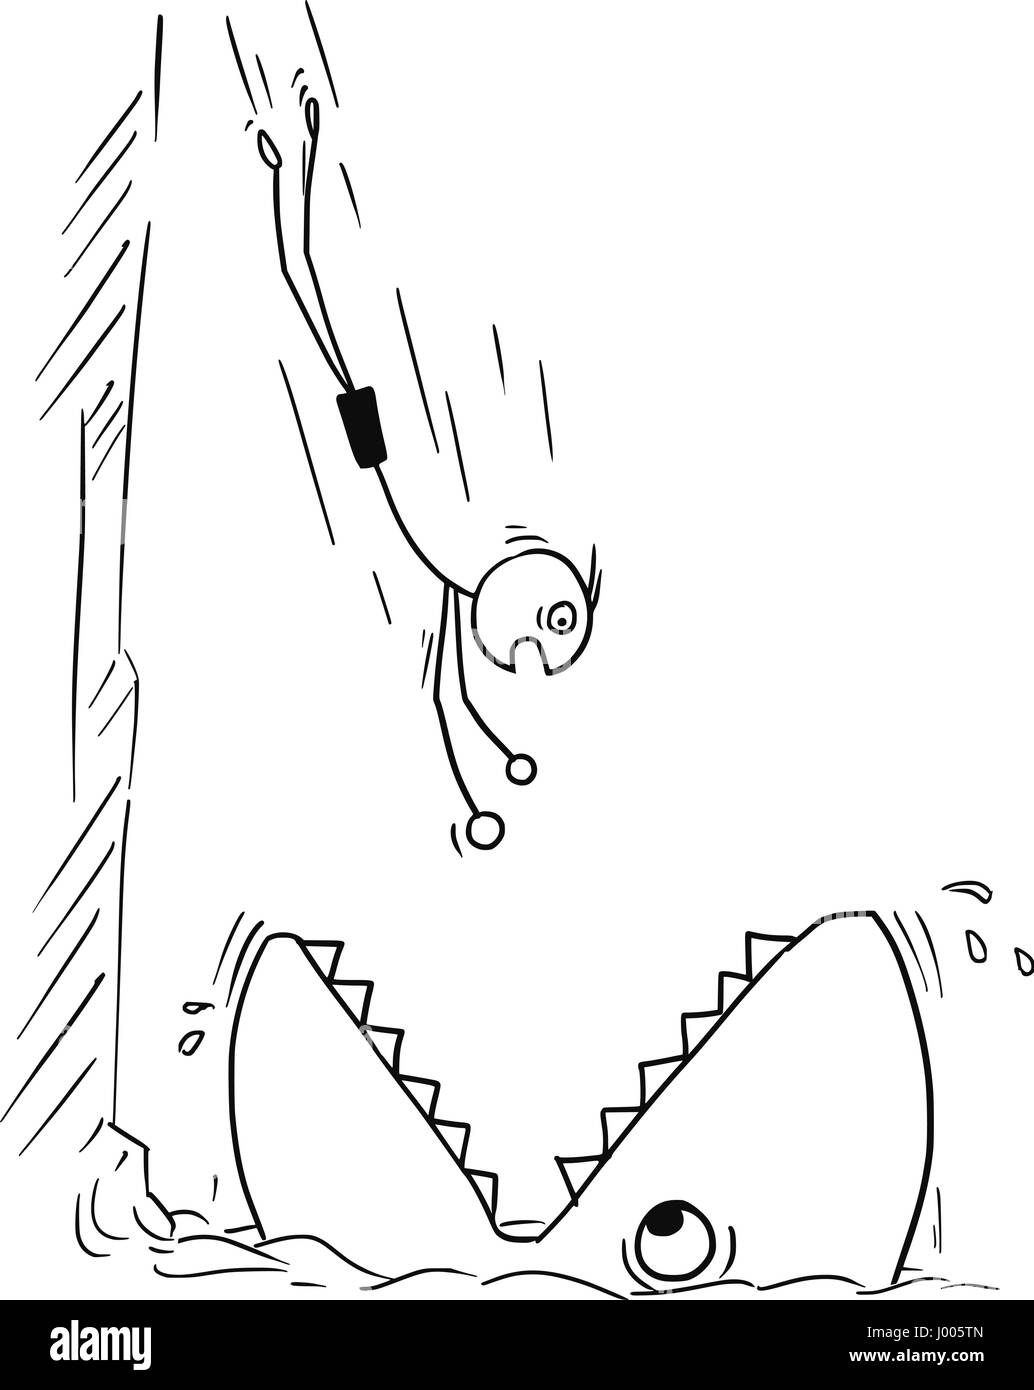 Cartoon Vector Stickman Mann von hohen Felsen ins Wasser springen, aber stattdessen in großen Fisch oder Hai Mund springen Stock Vektor